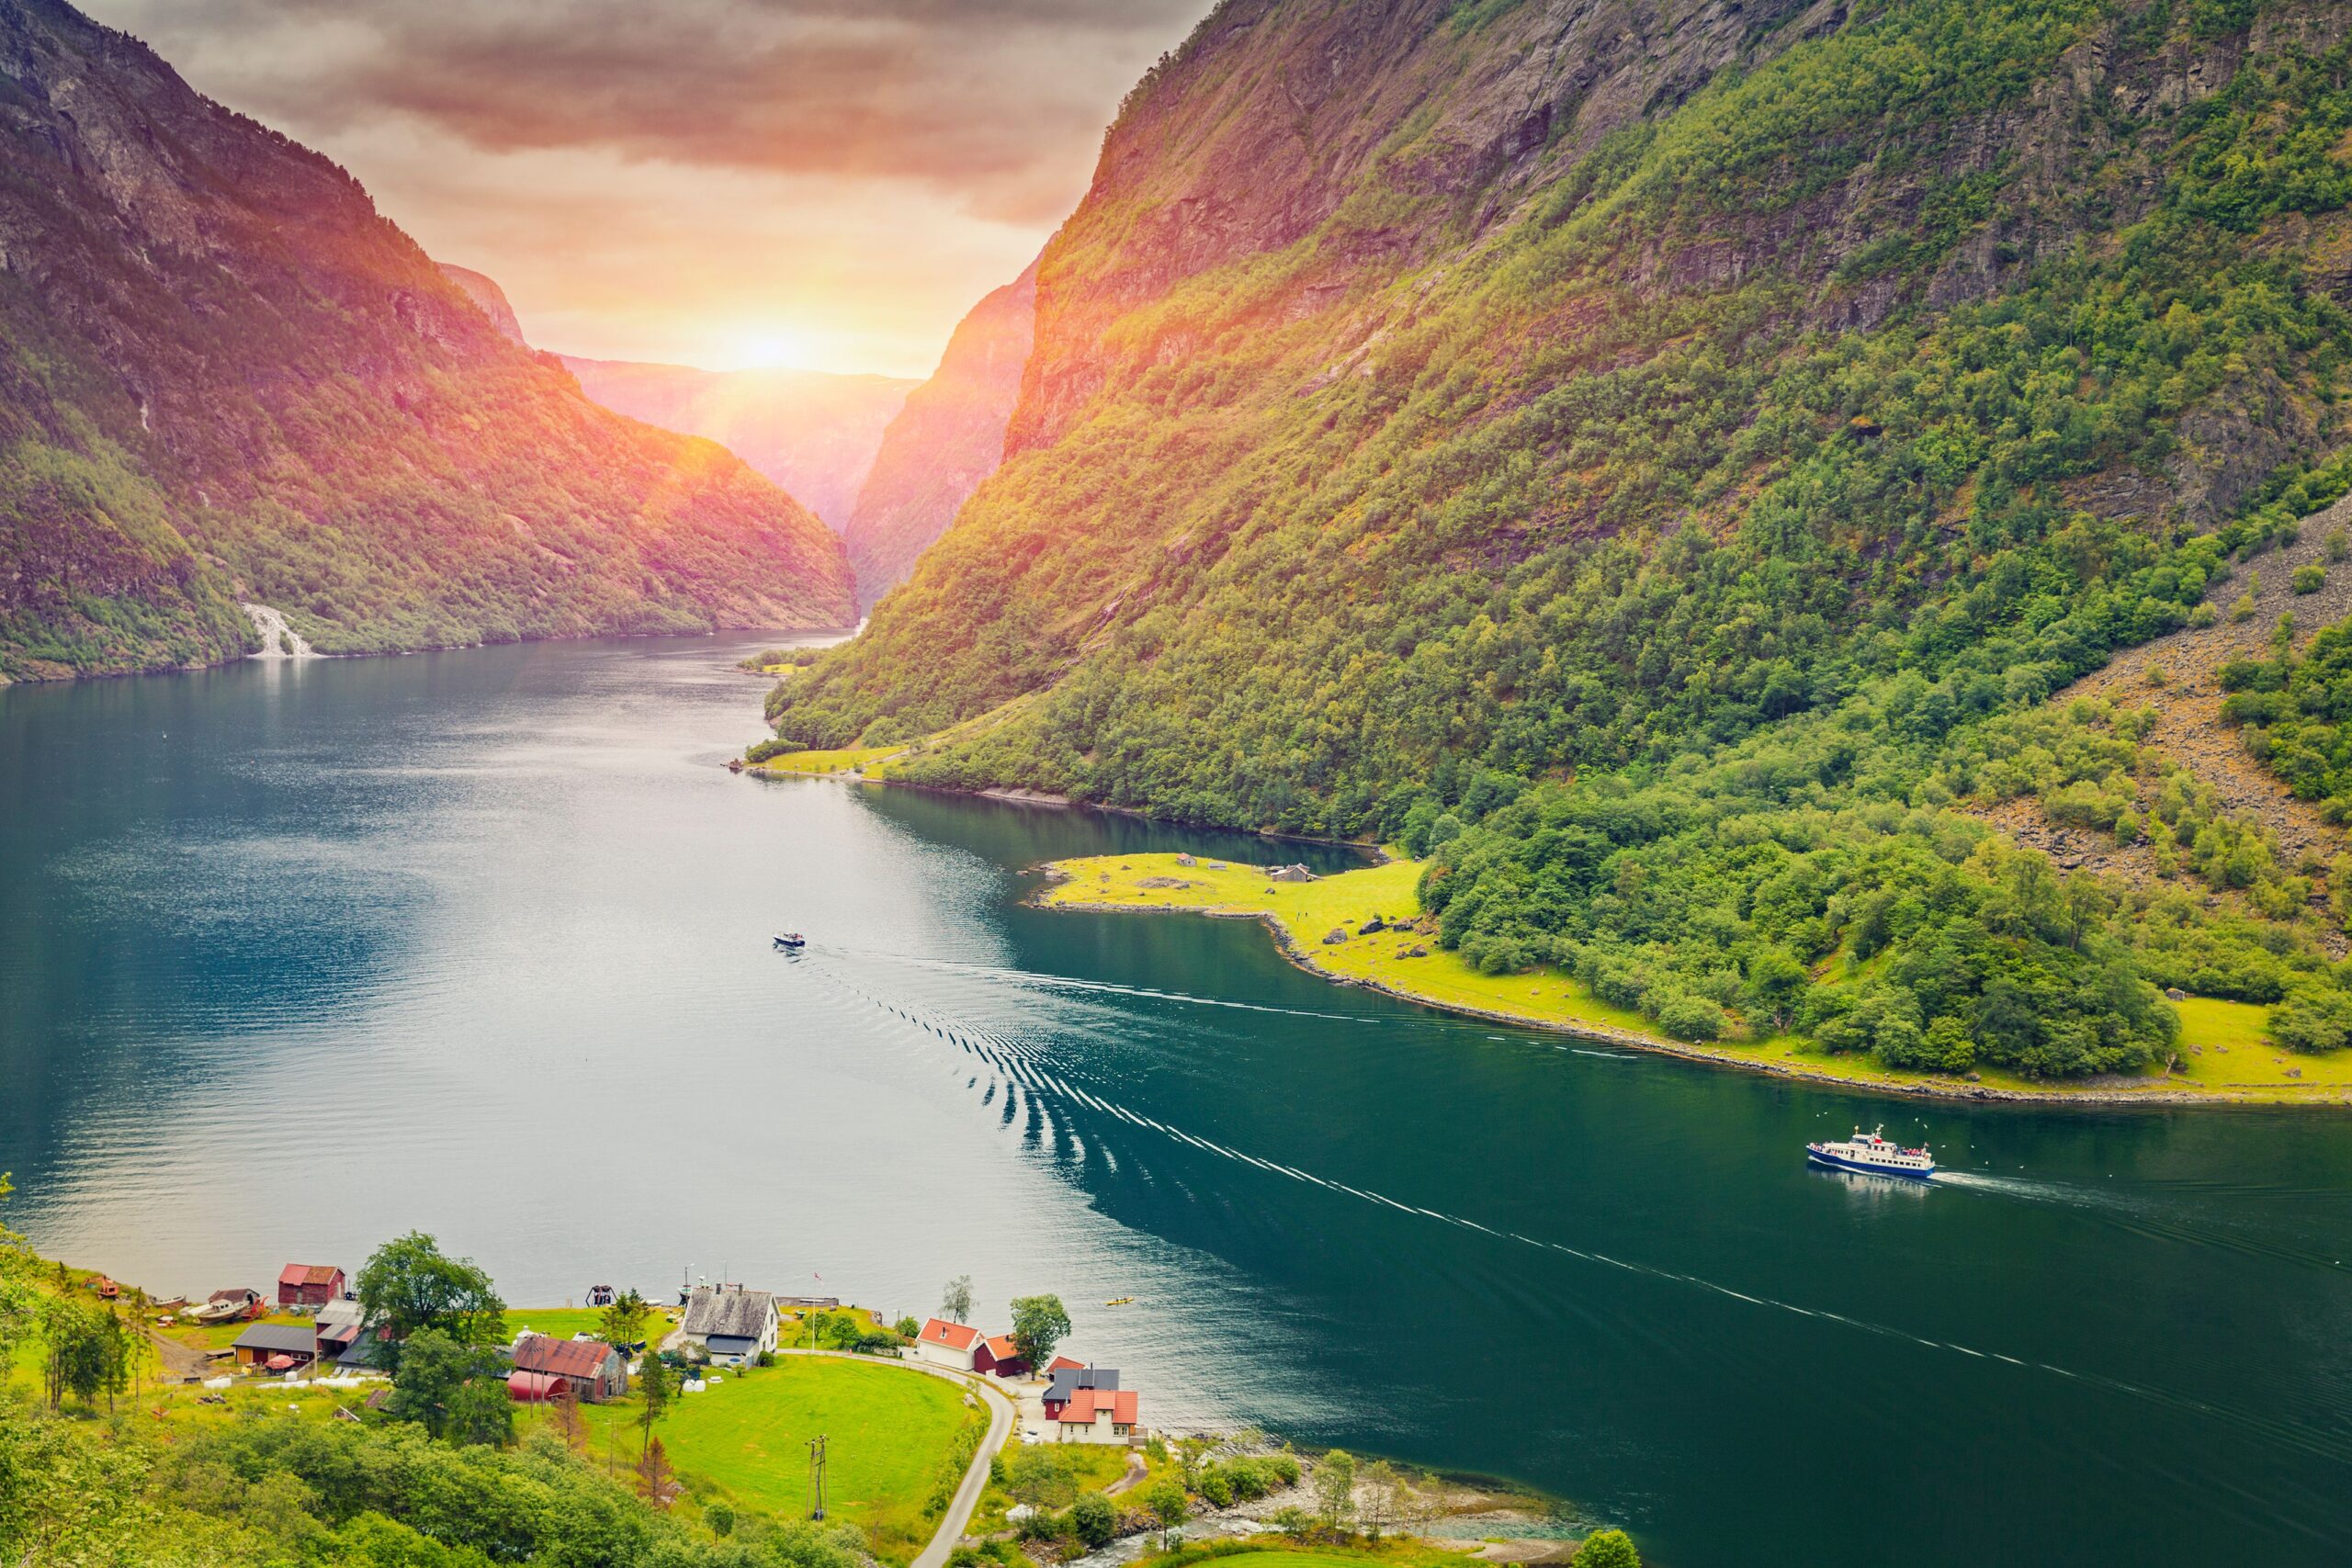 Vrhunci norveških fjordov<br />
Odhod: 22. 9., 3 dni